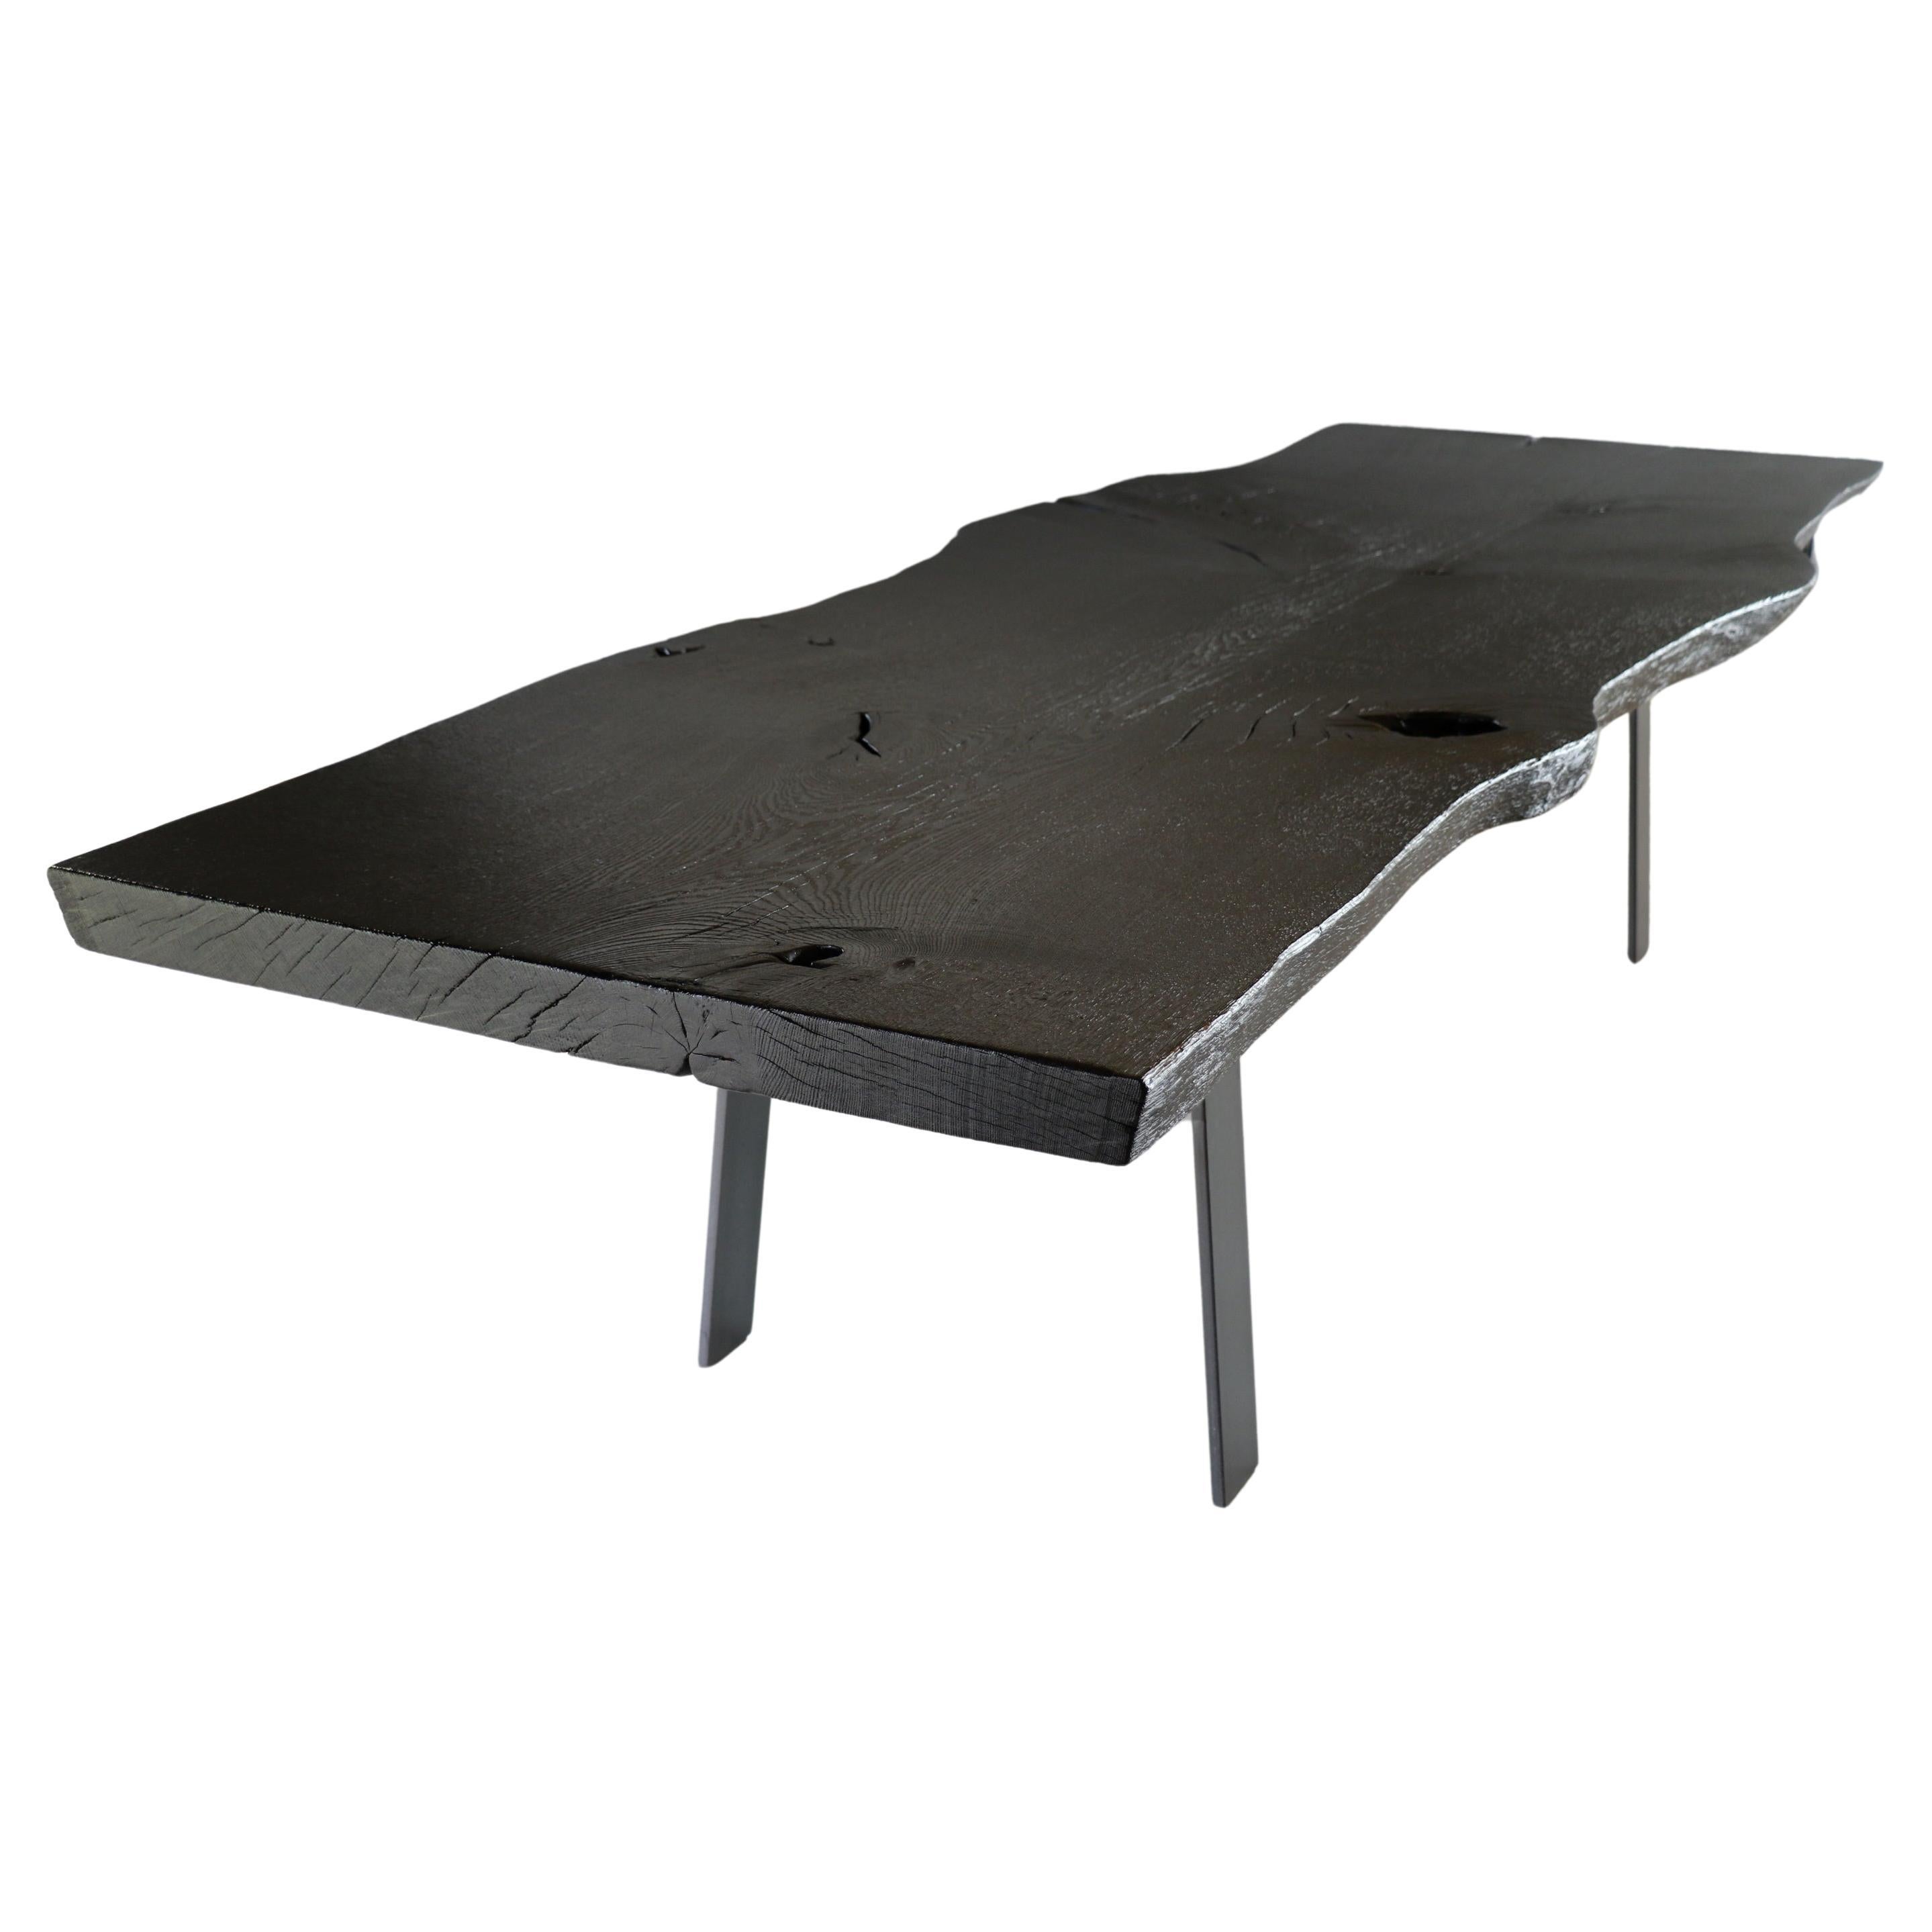 Moderner, rustikaler Tisch aus gebrannter und gebürsteter Eiche, Stahlgestell For Sale